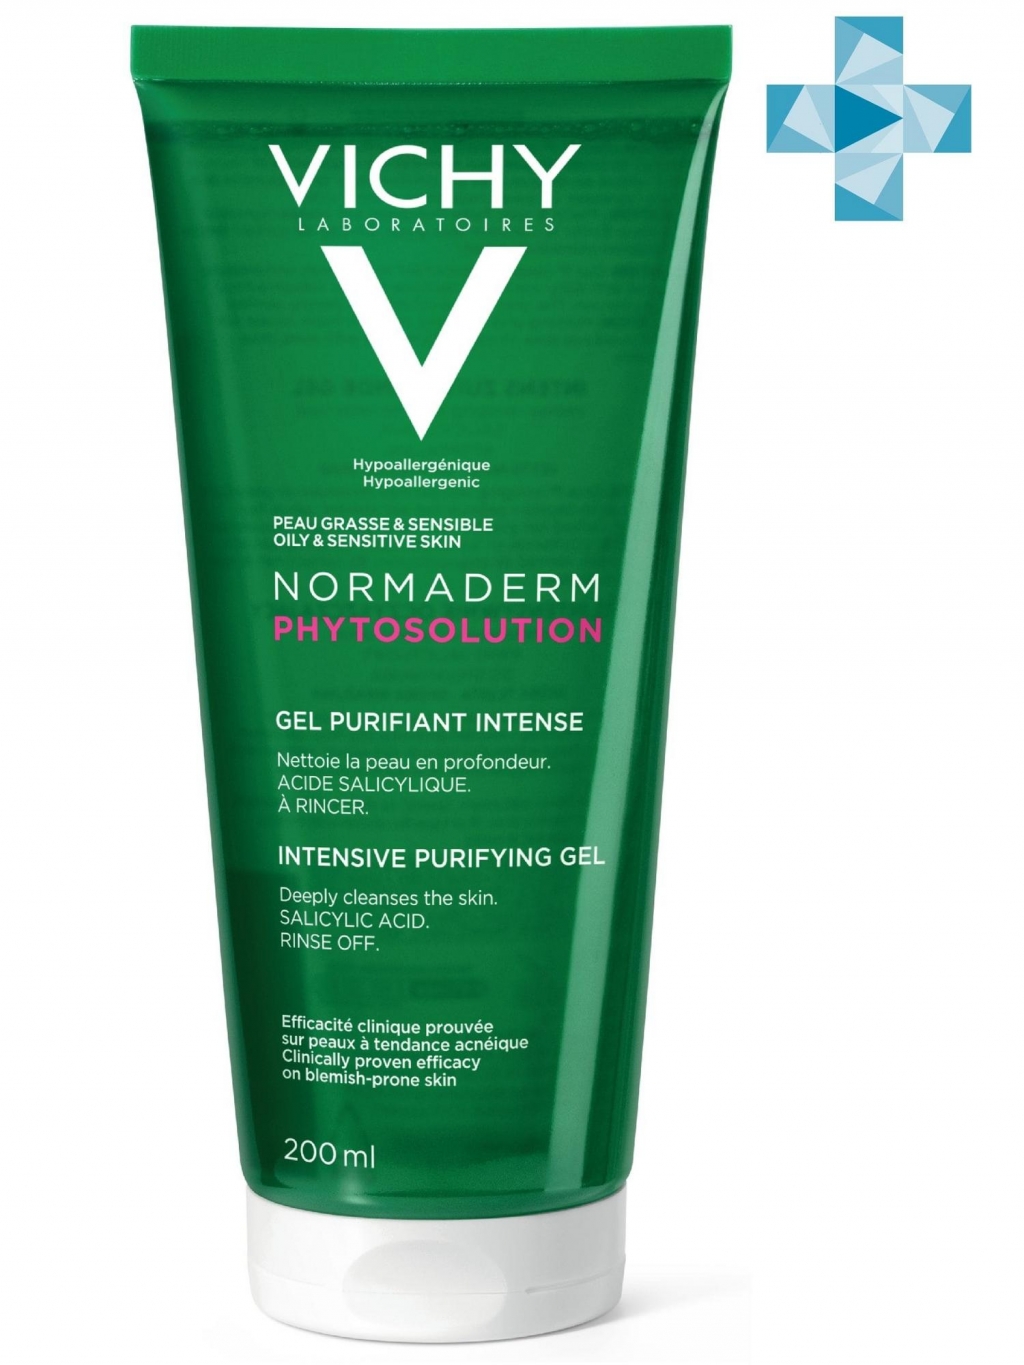 Vichy Очищающий гель для умывания для жирной и проблемной кожи Phytosolution, 200 мл (Vichy, Normaderm)